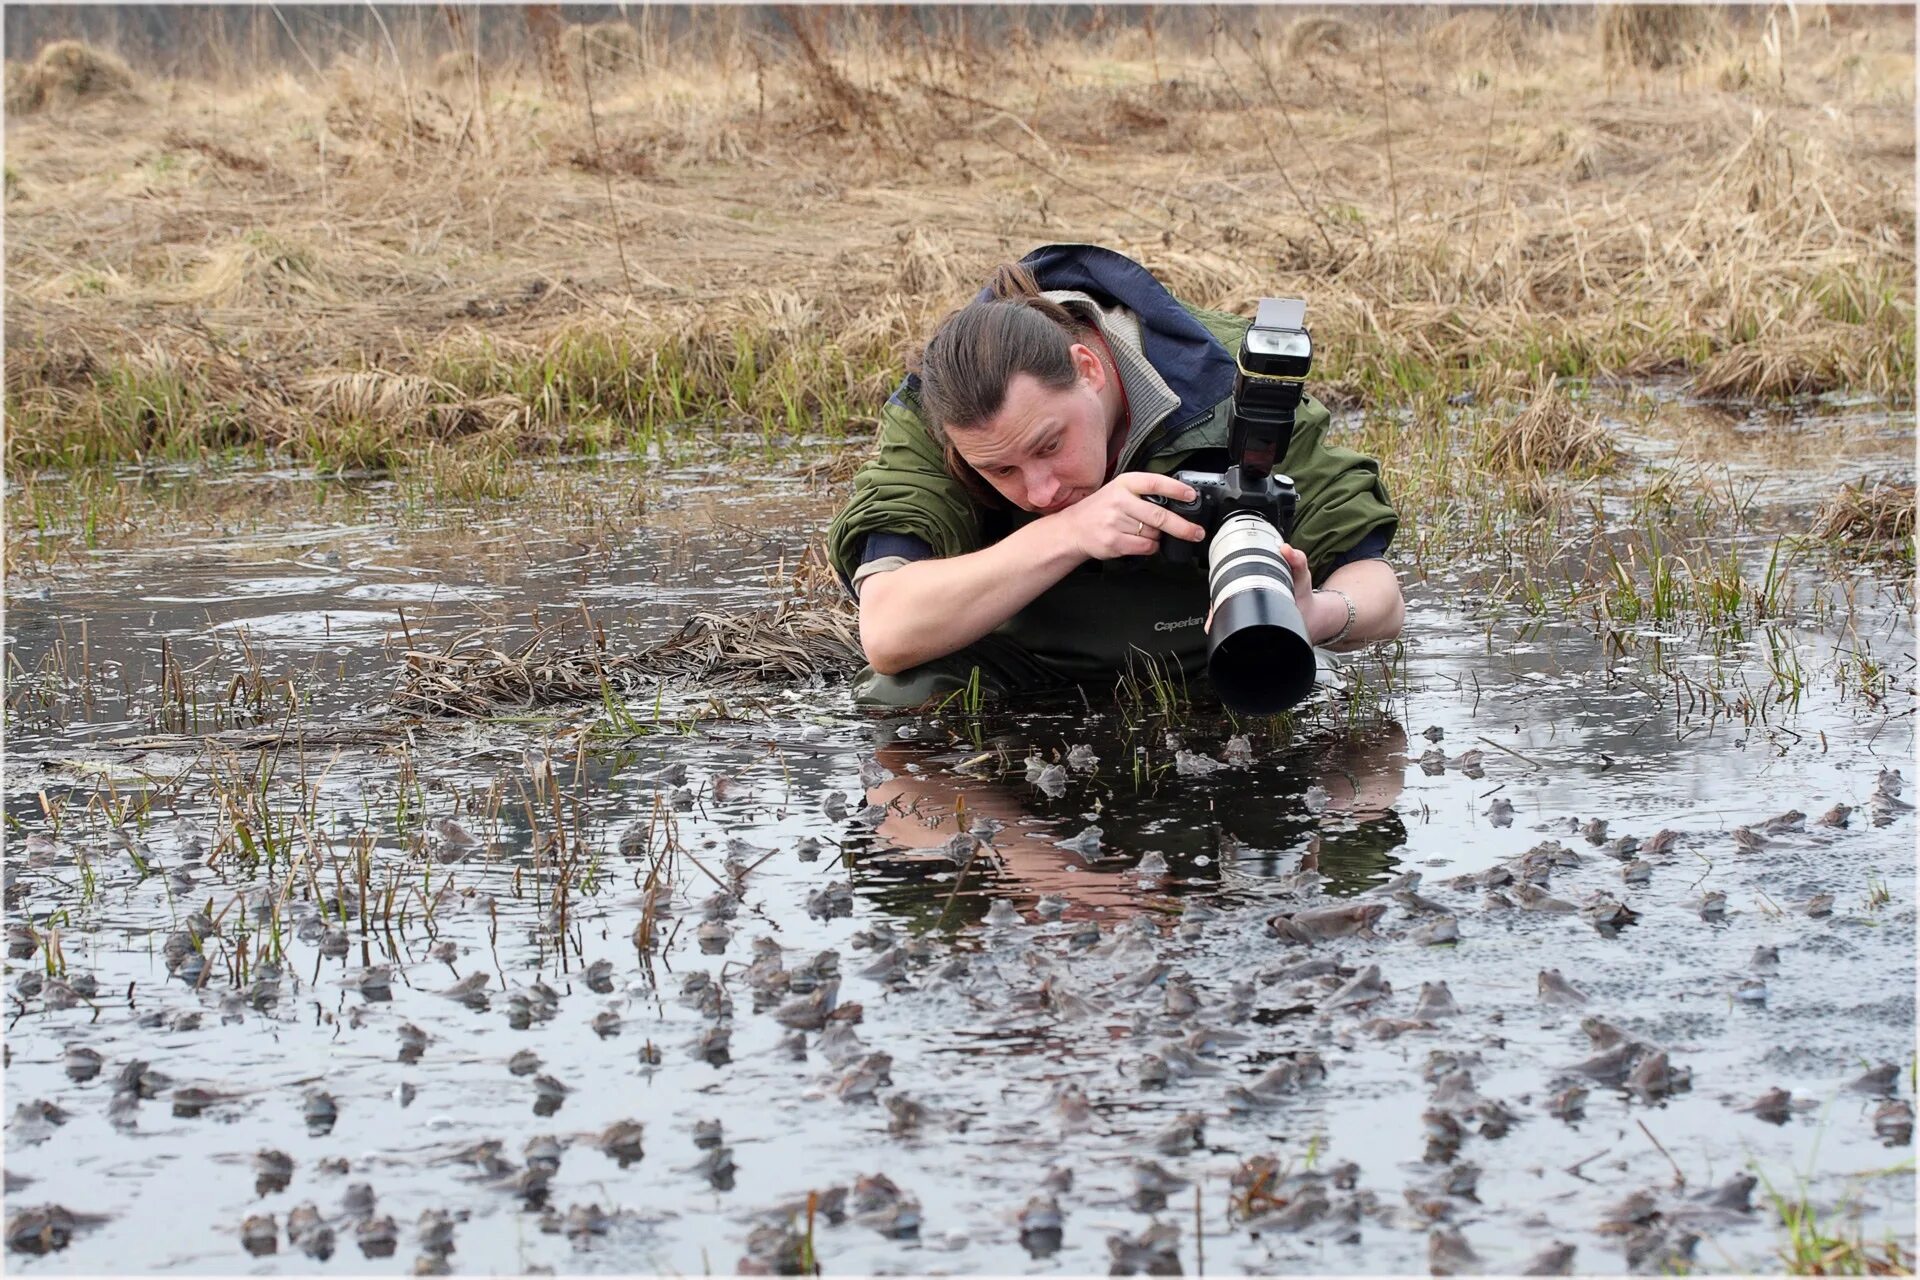 Каждый в своем болоте. Фотограф в засаде. Фотограф в болоте. Человек фотографирует природу. Фотограф фотографирует природу.